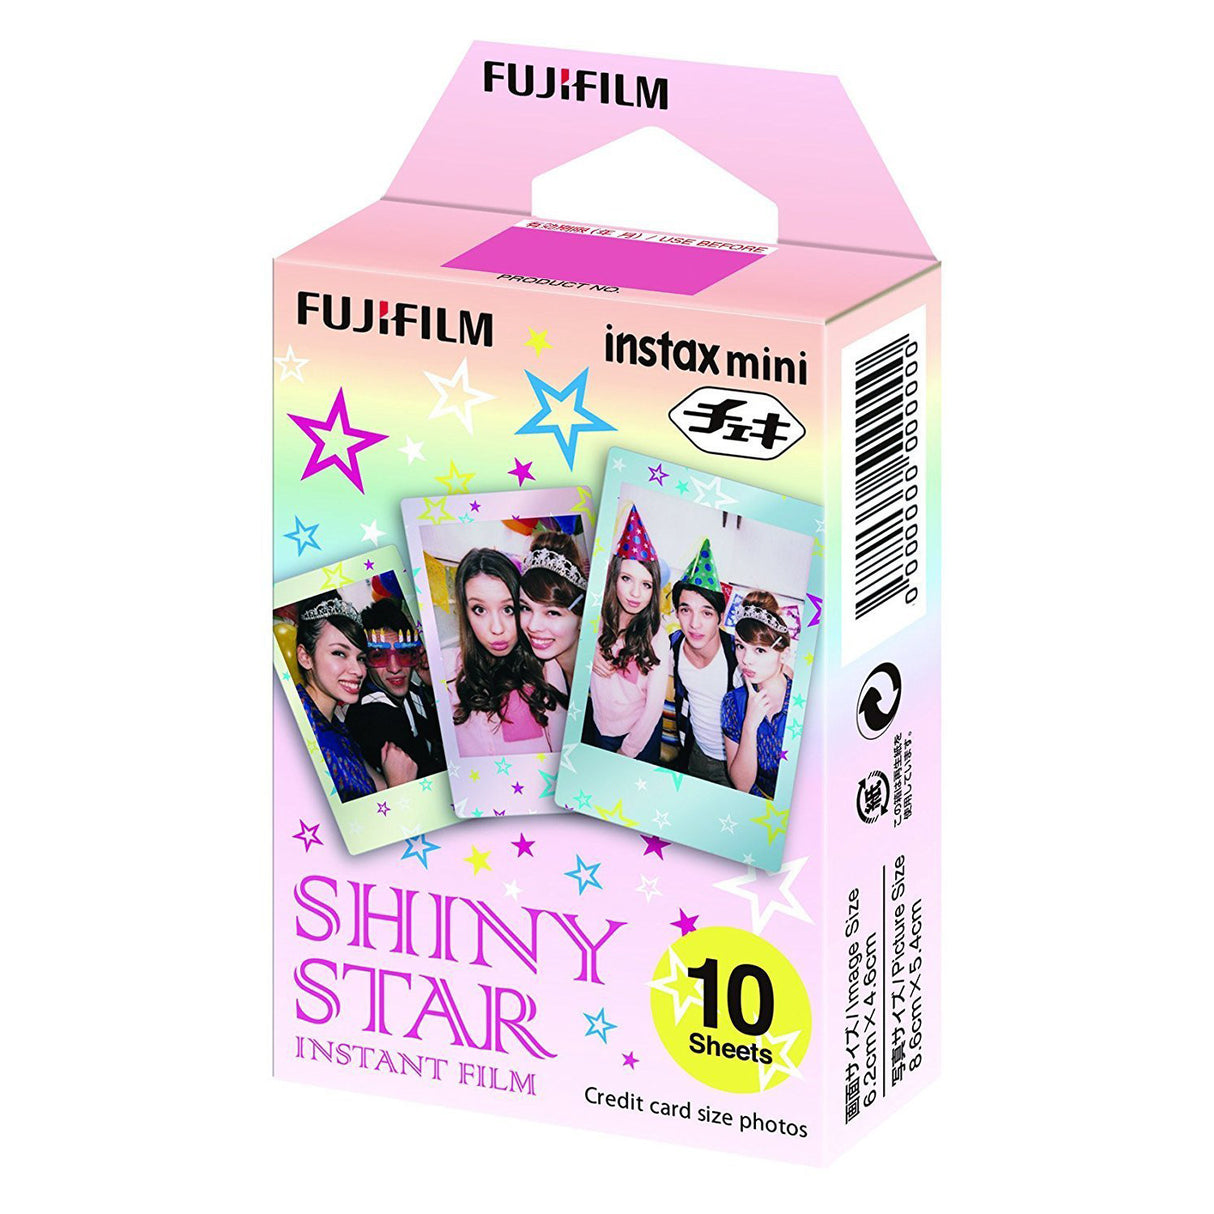 Fujifilm Instax Mini Instant Film 30 Shots (10x3 Pack, Shiny Star)